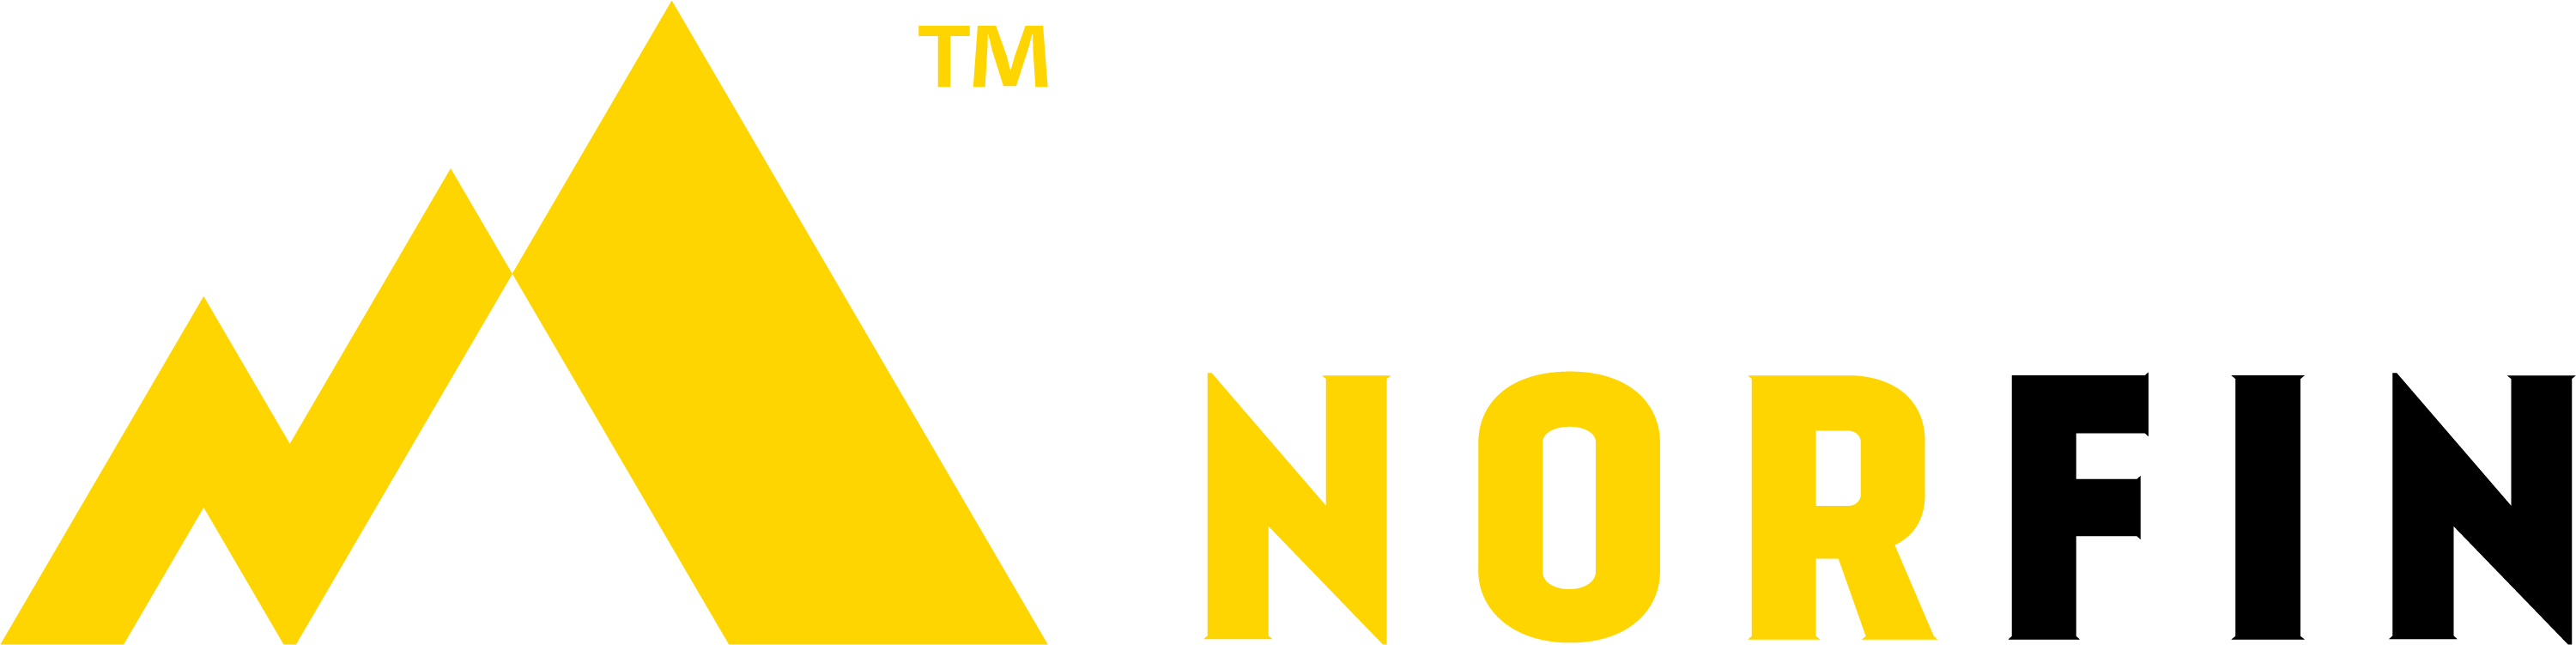 Norfin logo tm hor rgb